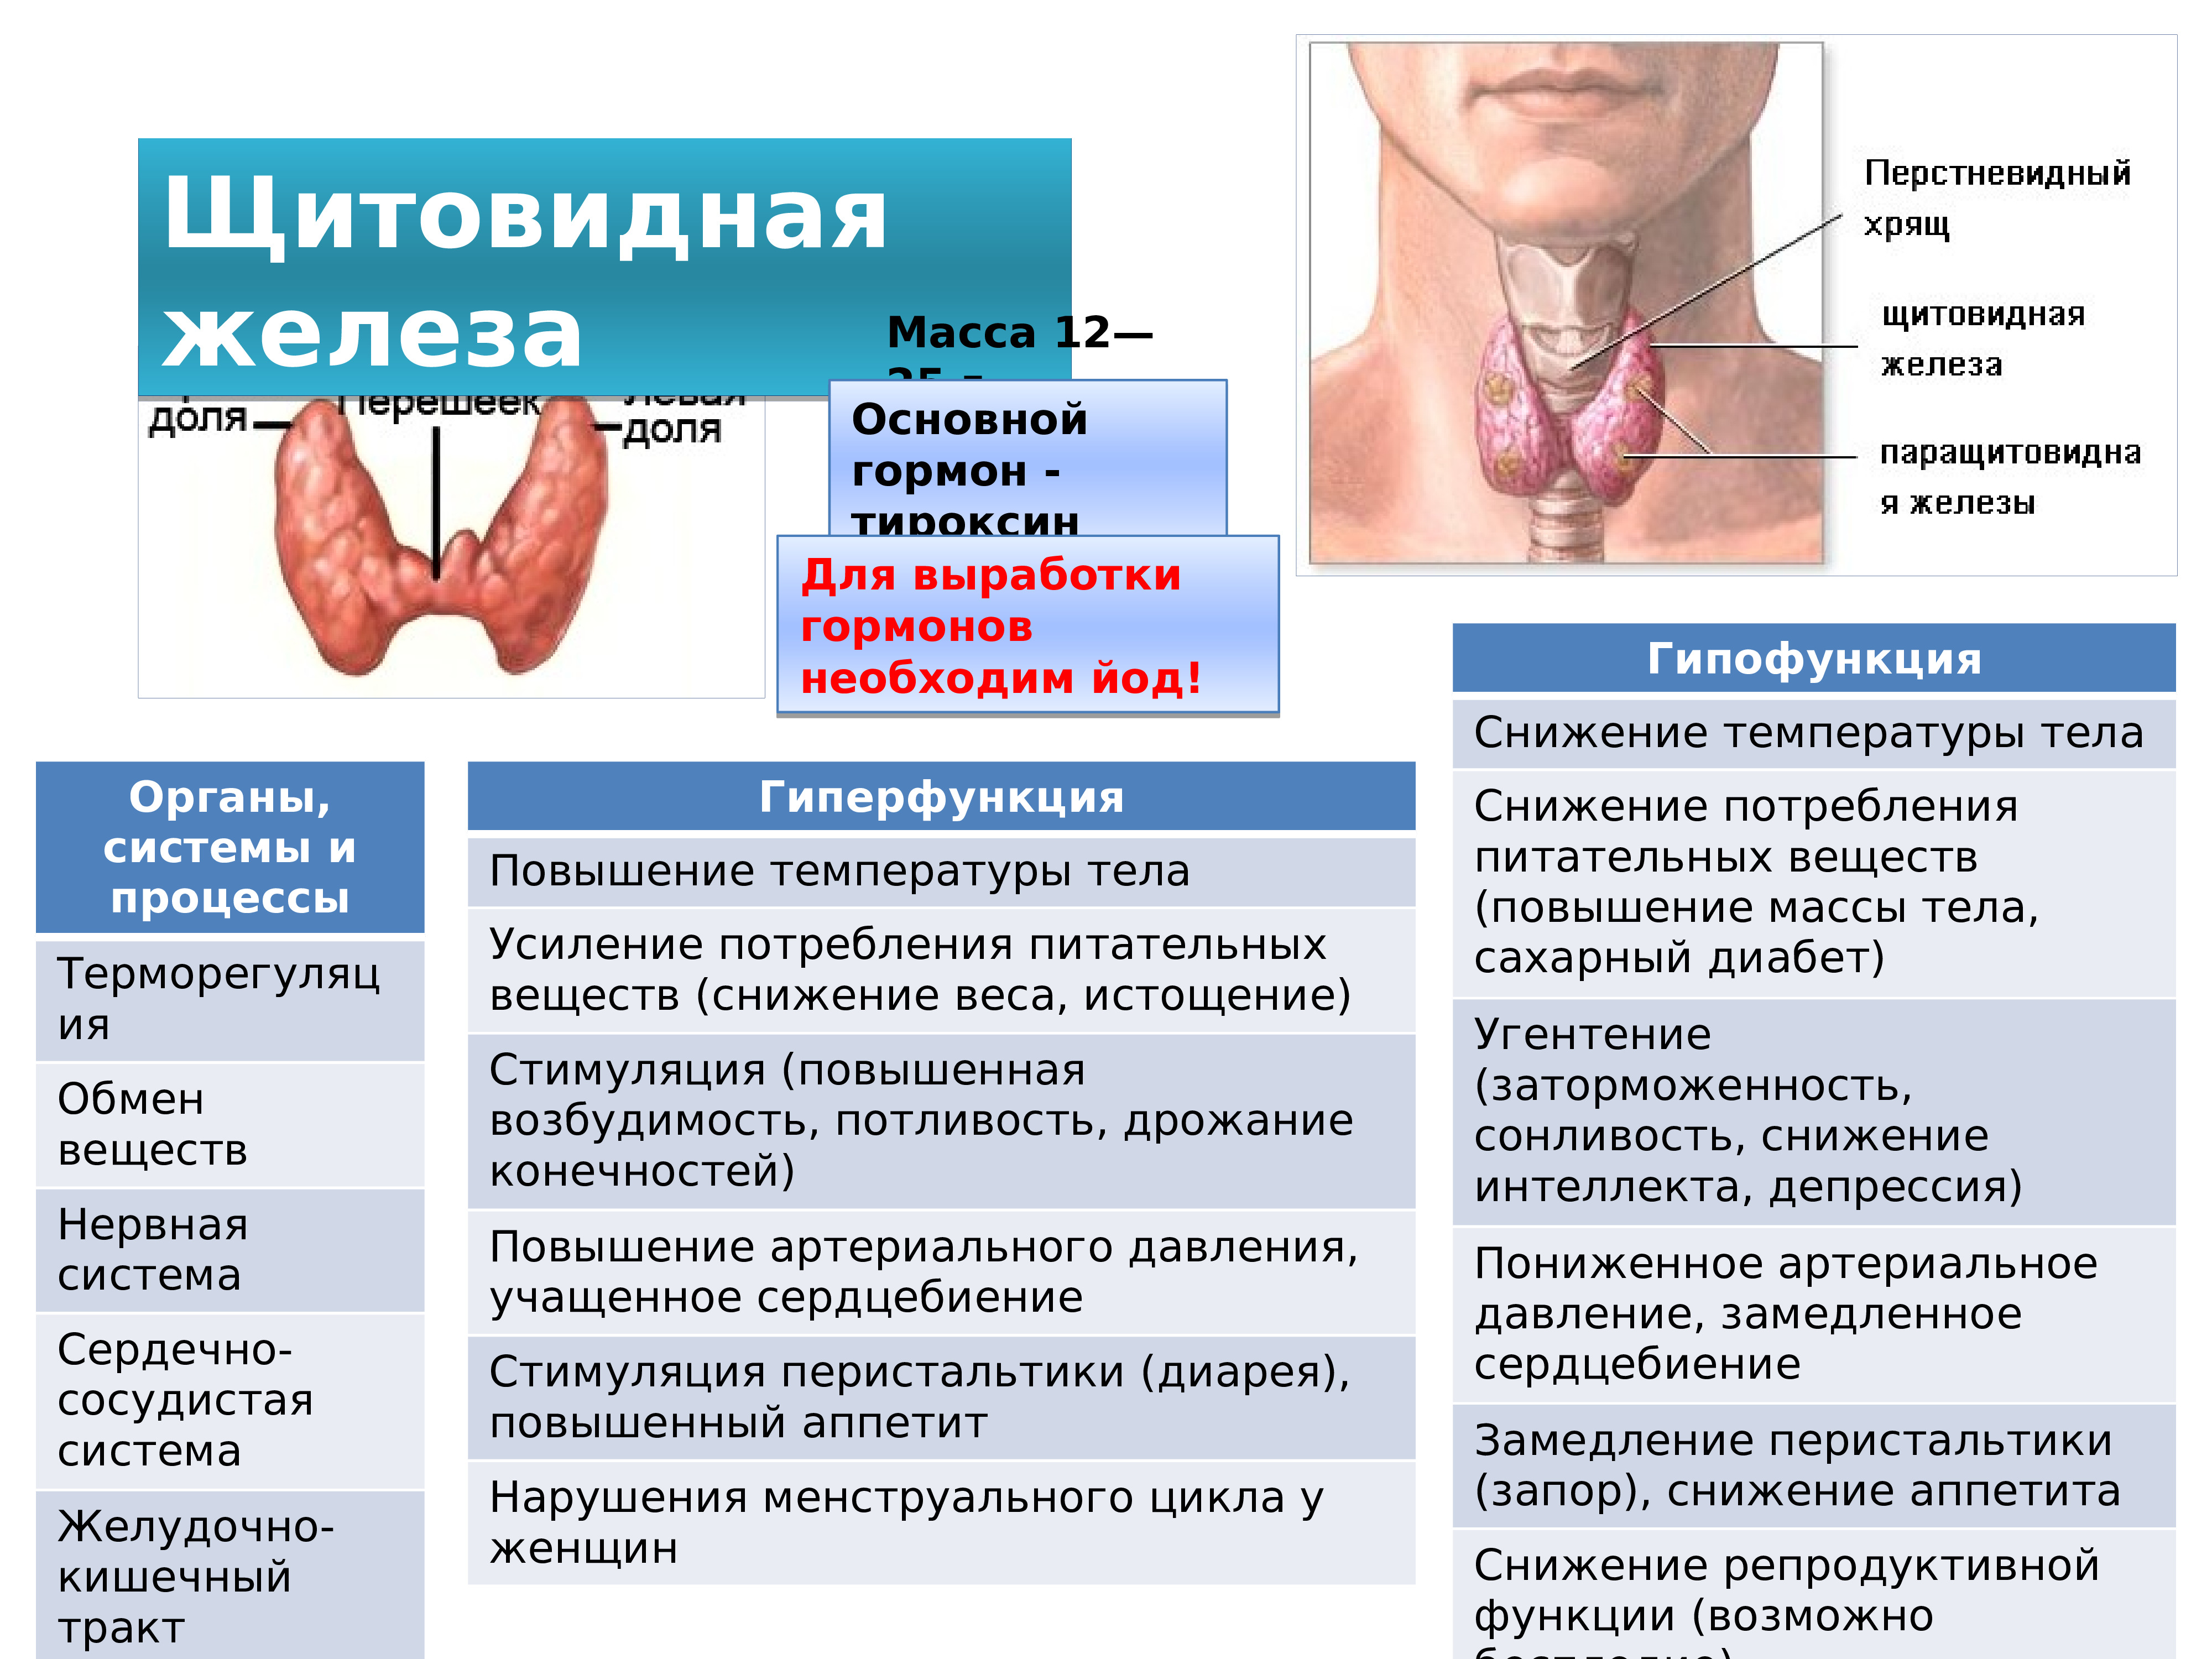 Гипофункция тироксина. Гипофункция щитовидной железы. Гипофункция гормонов щитовидной железы. Щитовидная железа йод тироксин эндокринная система. Масса щитовидной железы.